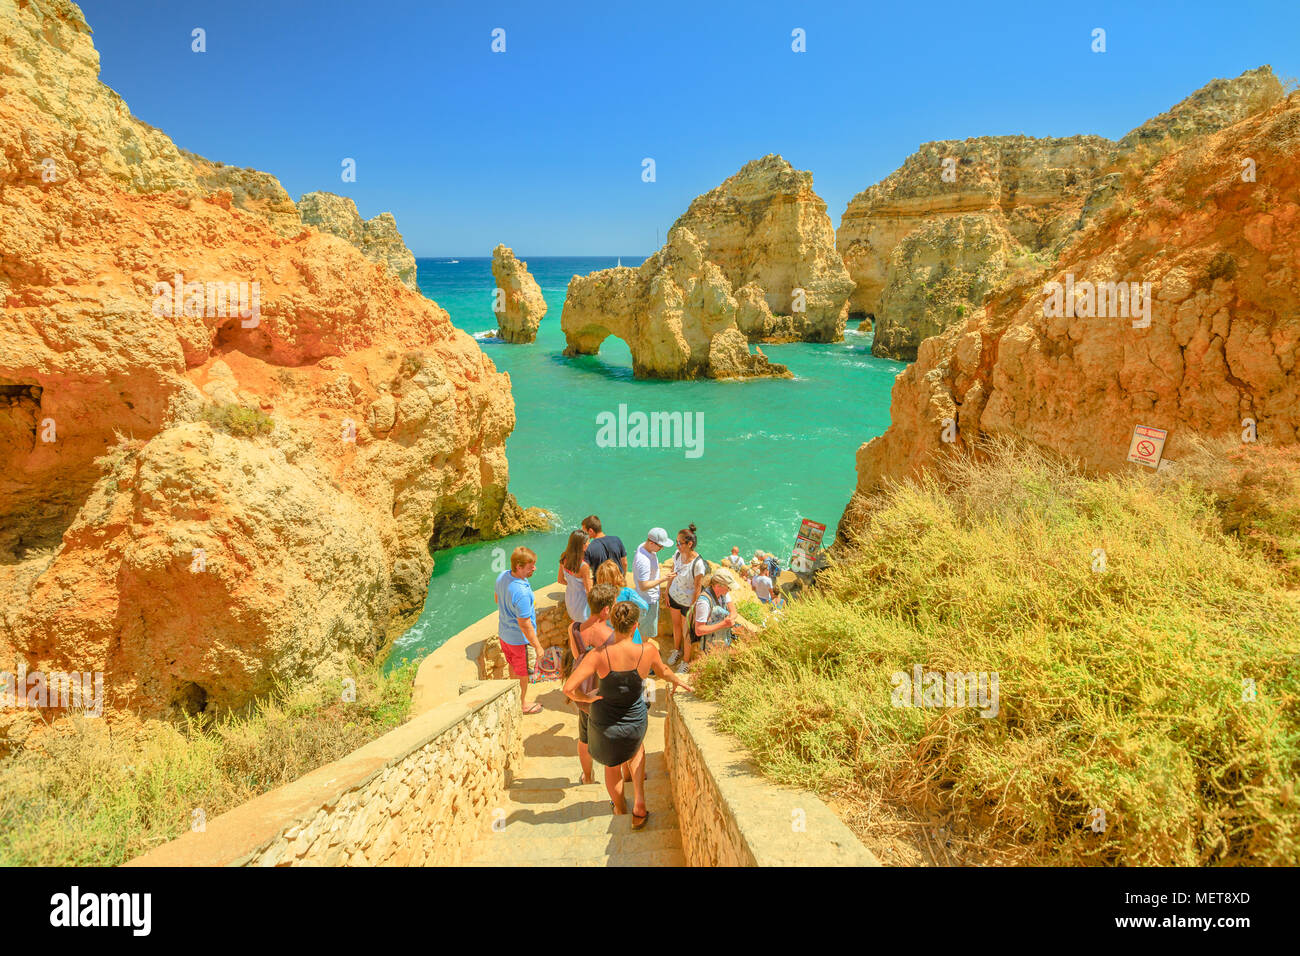 Lagos, Portogallo - Agosto 22, 2017: i turisti sulle scale in attesa di viaggio in barca per le grotte, gli archi e le formazioni rocciose di Ponta da Piedade a Lagos, una delle principali destinazioni turistiche della costa dell'Algarve. Foto Stock